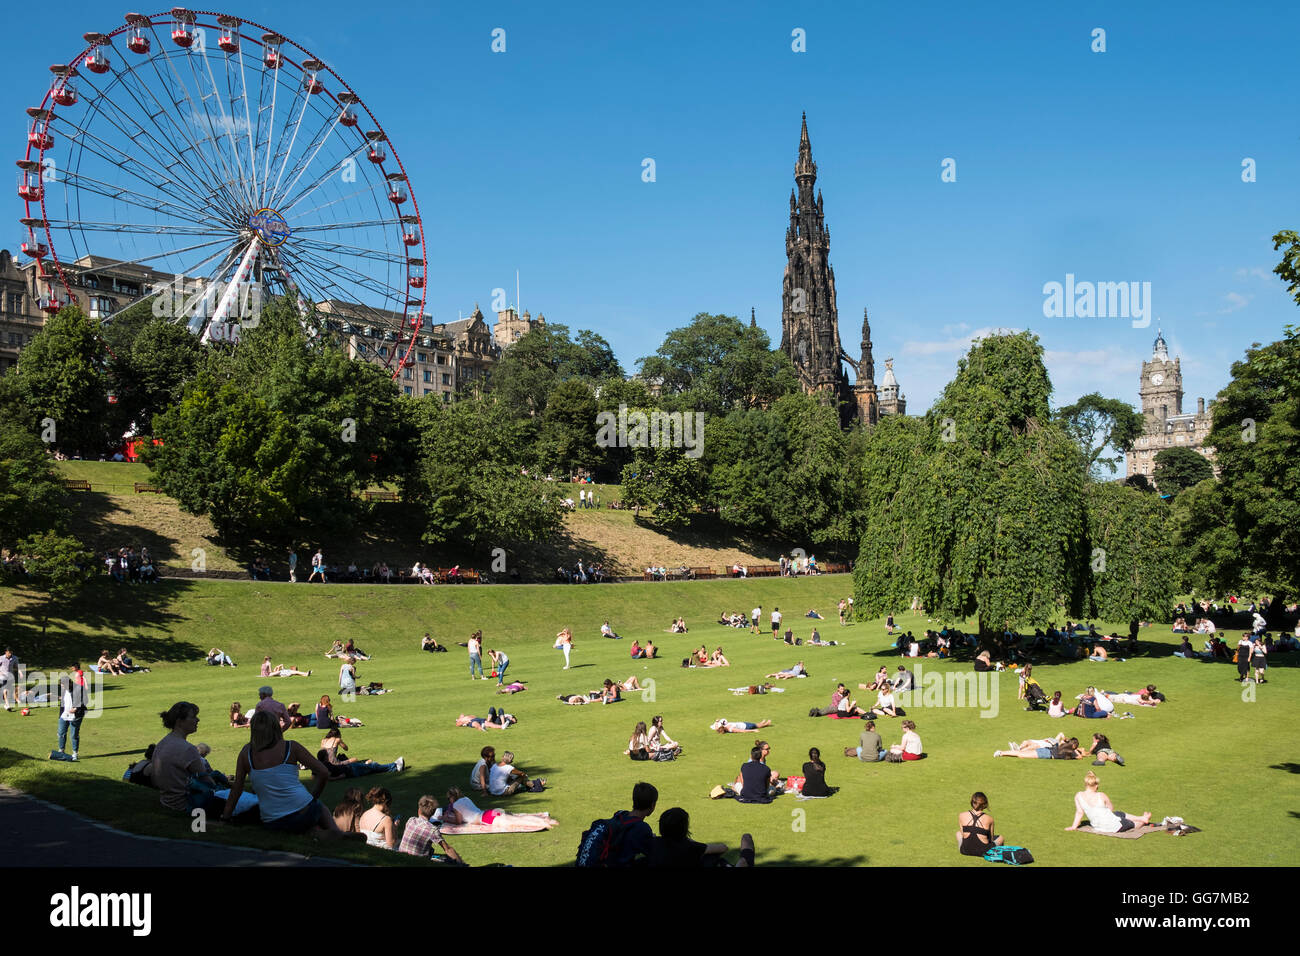 Heißes Sommerwetter bringt viele Menschen in Princes Street Gardens in Edinburgh, Schottland, Vereinigtes Königreich Stockfoto